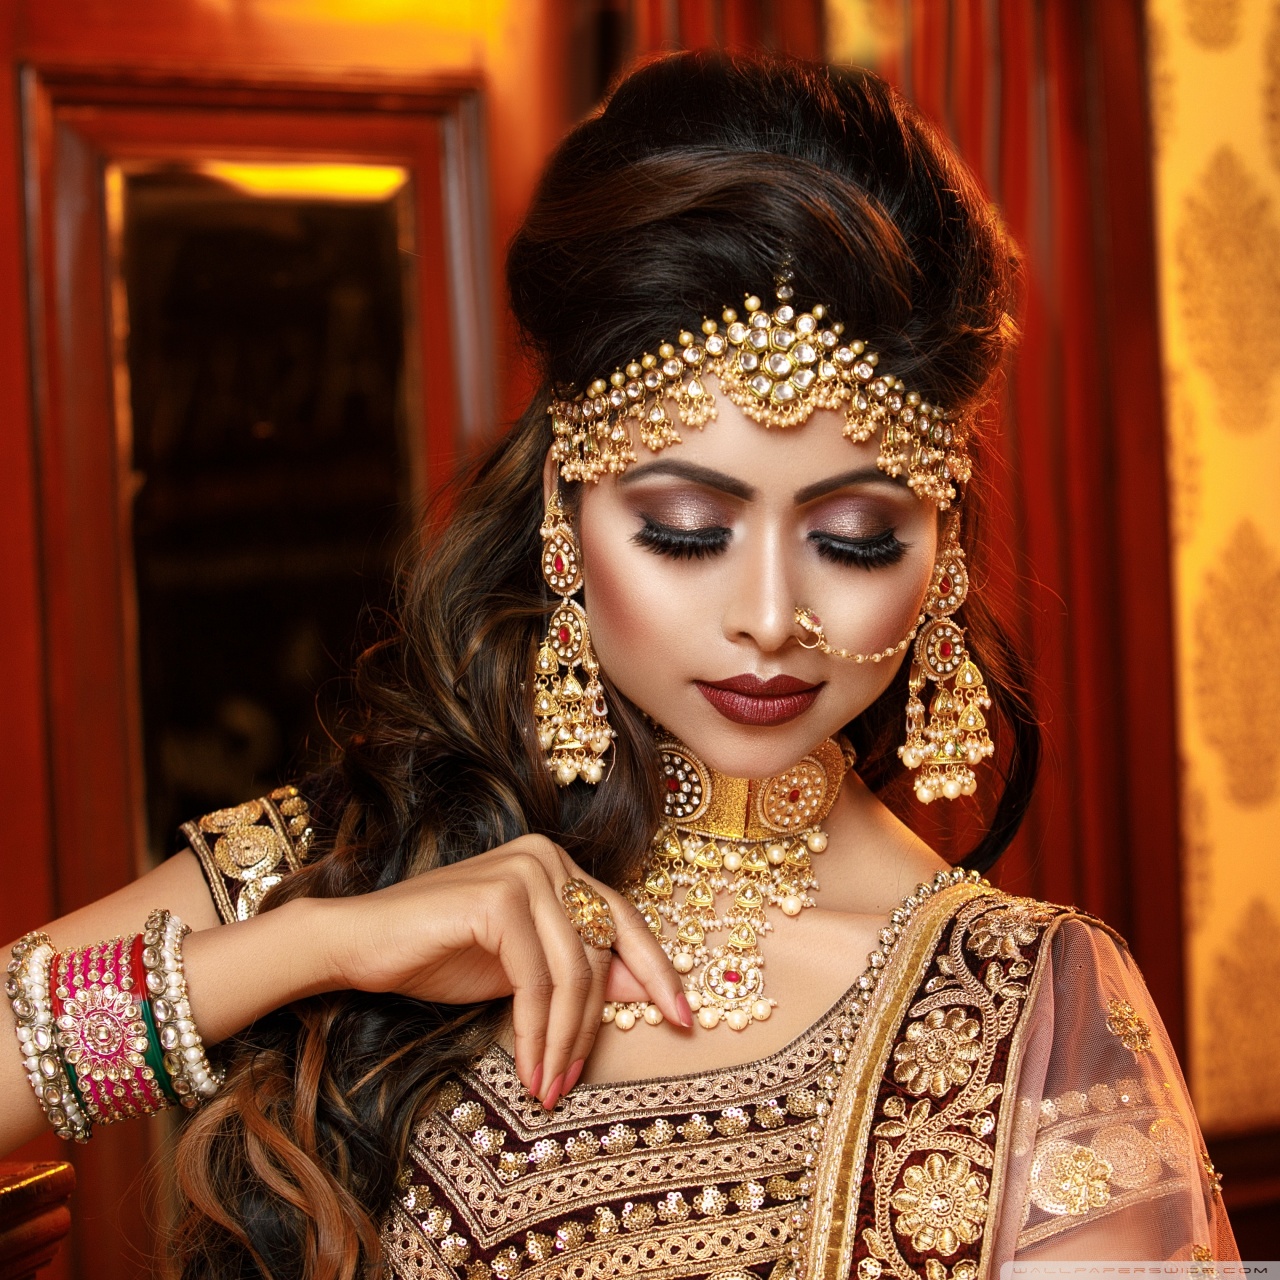 Beautiful Indian Girls Hd Wallpapers 1080p - HD Wallpaper 